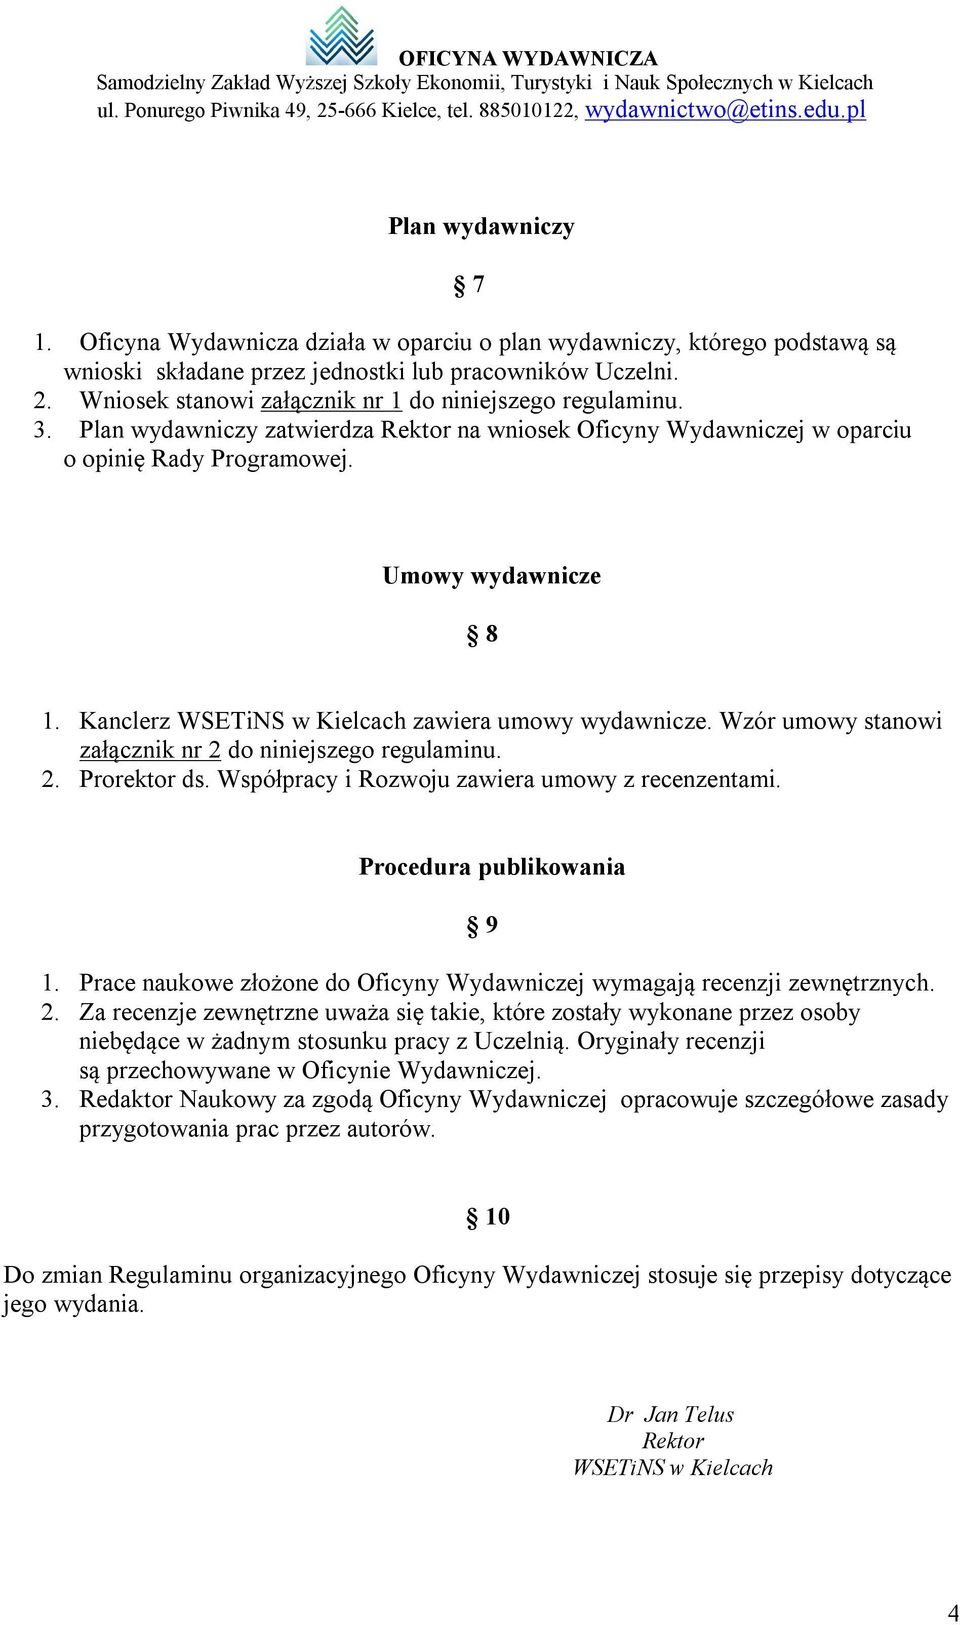 Kanclerz WSETiNS w Kielcach zawiera umowy wydawnicze. Wzór umowy stanowi załącznik nr 2 do niniejszego regulaminu. 2. Prorektor ds. Współpracy i Rozwoju zawiera umowy z recenzentami.